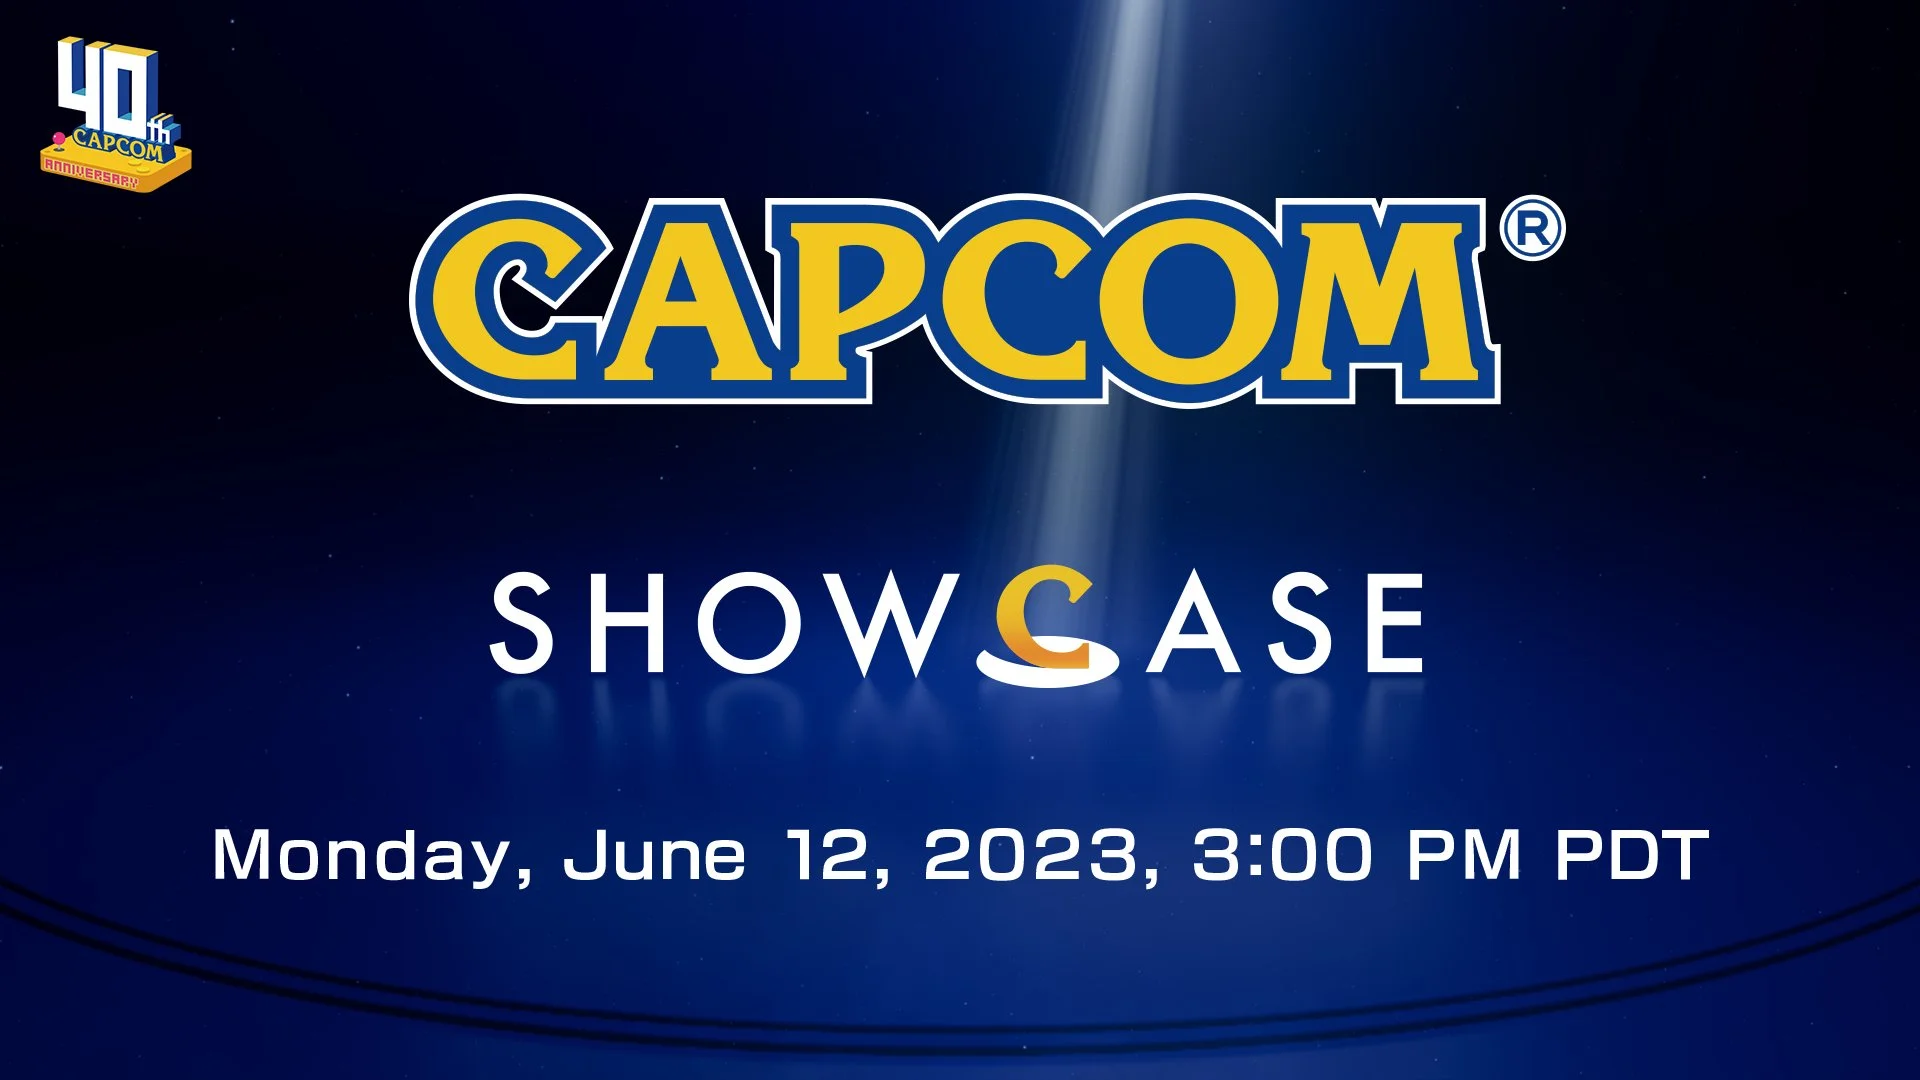 Capcom расскажет о своих играх в рамках собственного шоу на следующей неделе - фото 1